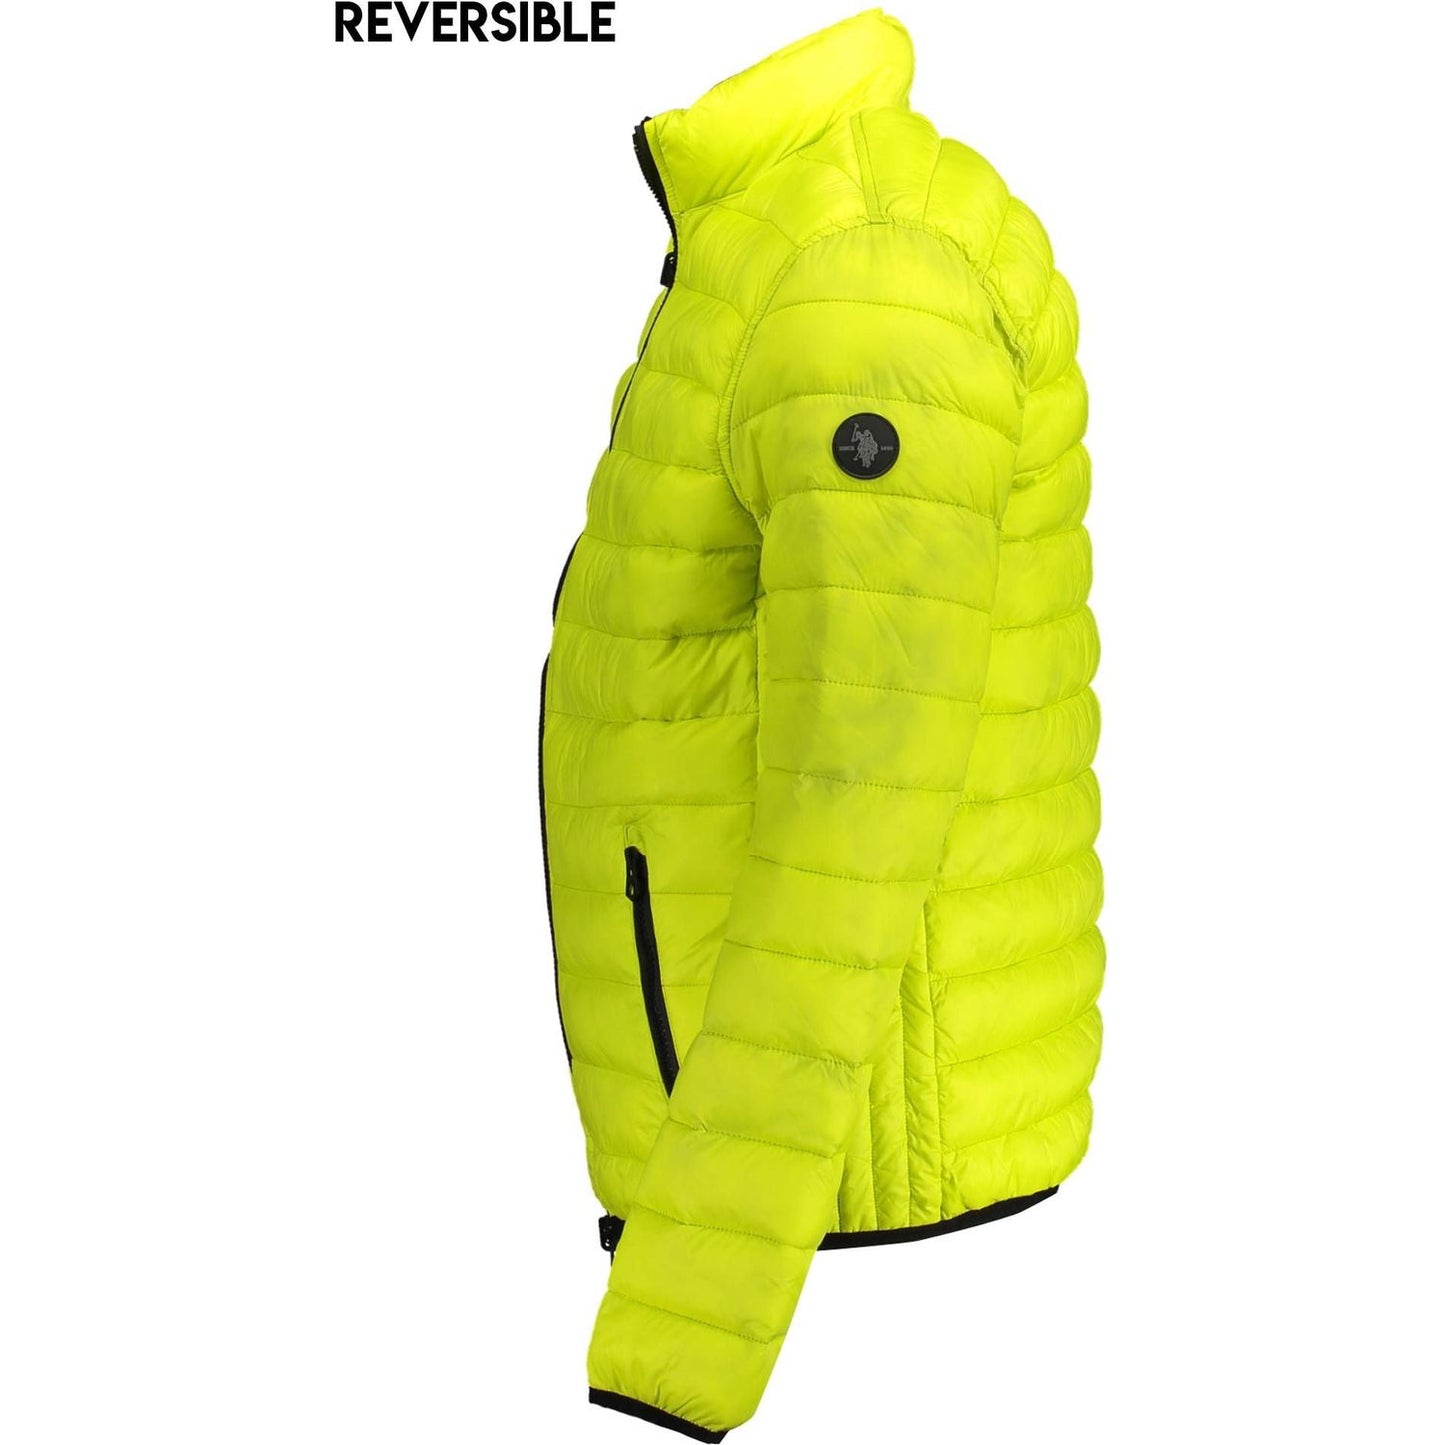 U.S. POLO ASSN. Reversible Long-Sleeve Nylon Jacket reversible-long-sleeve-nylon-jacket